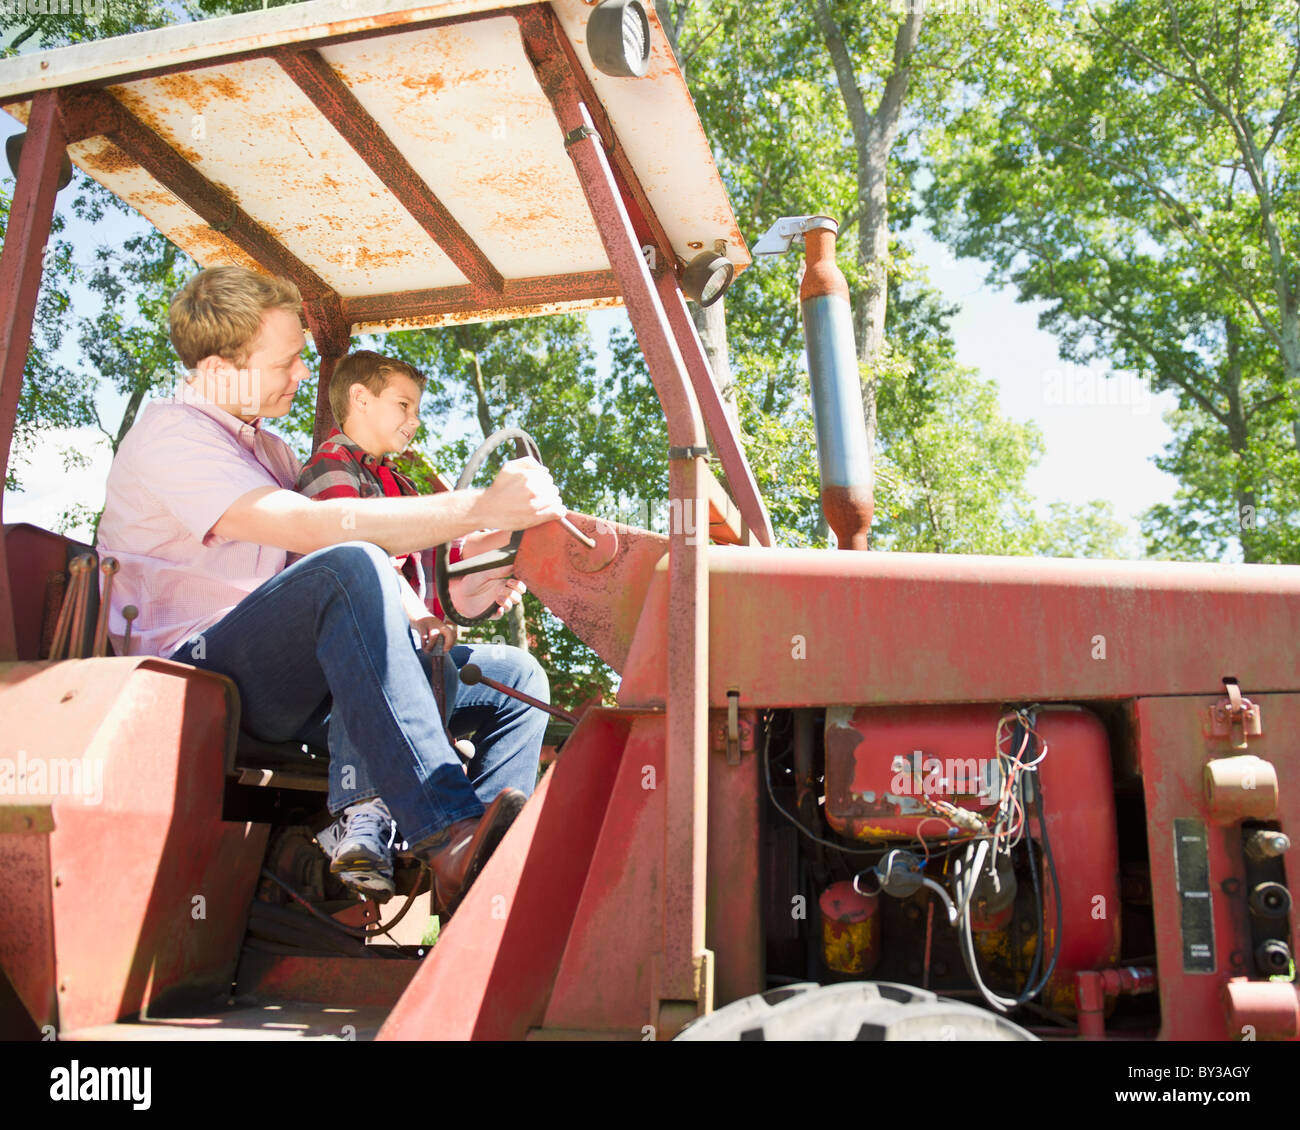 USA (New York), Flandre, Boy (8-9) avec le père assis sur le tracteur Banque D'Images